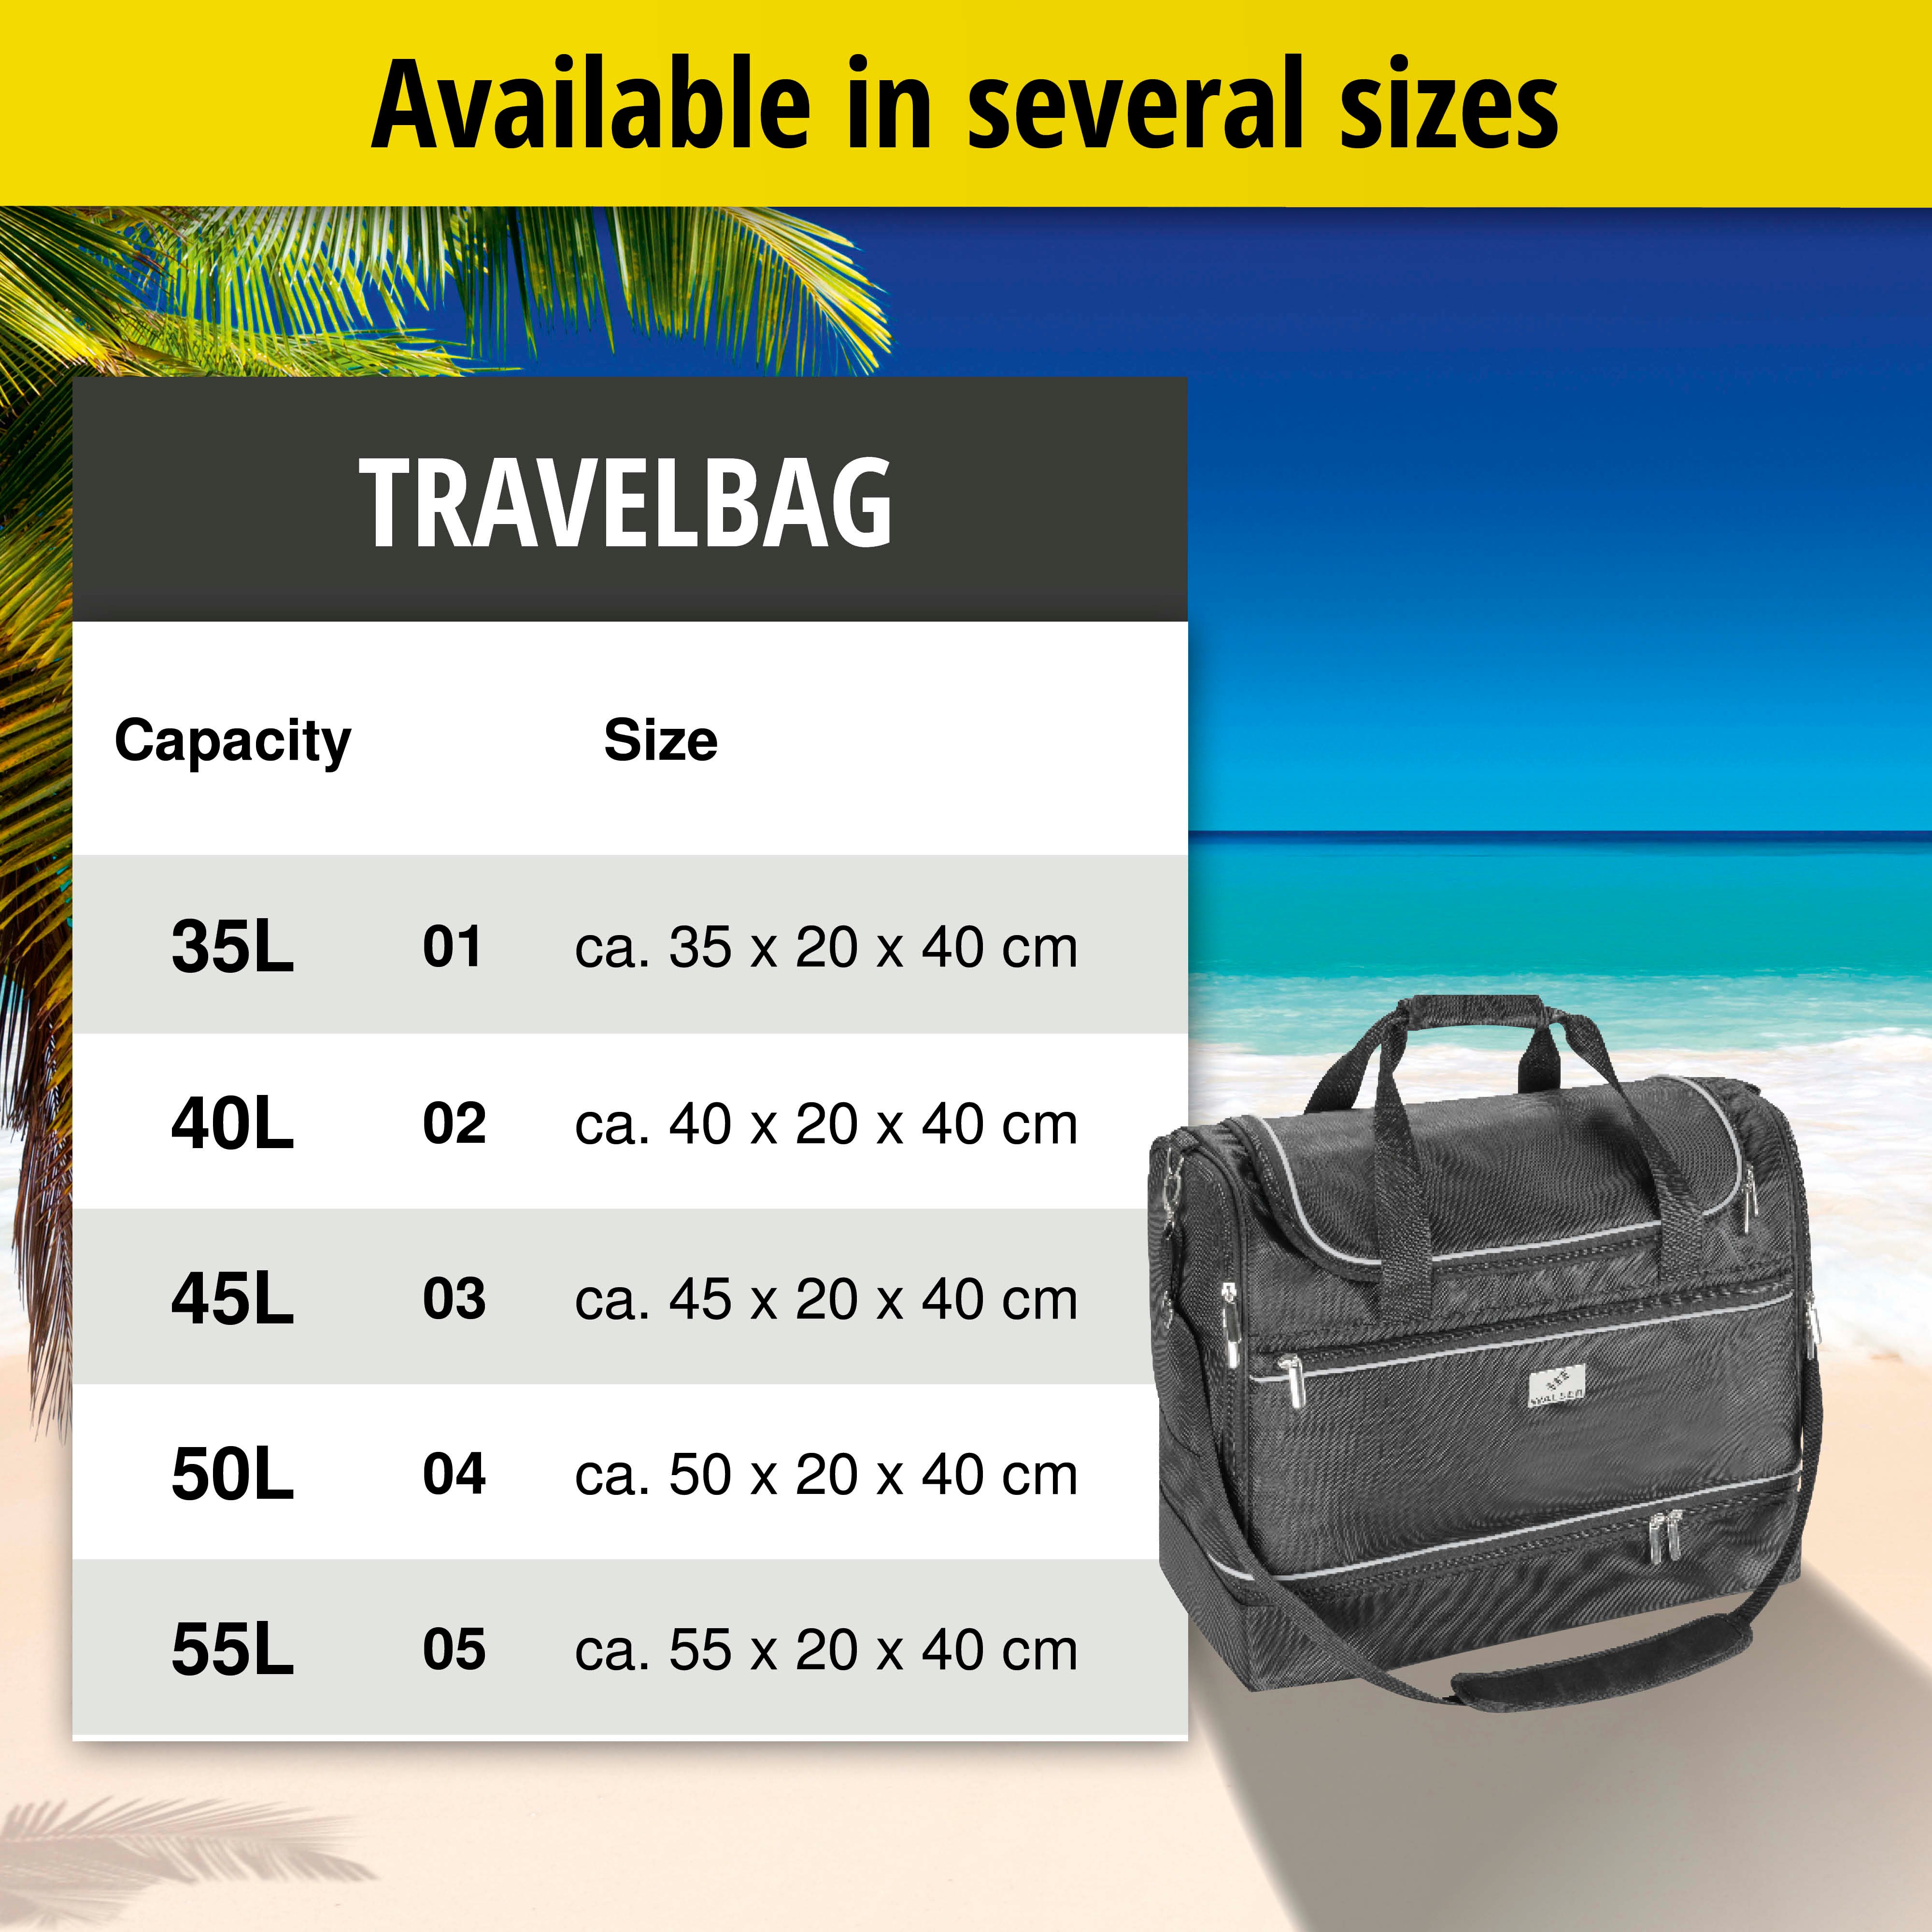 Carbags travel bag 50x20x40cm black